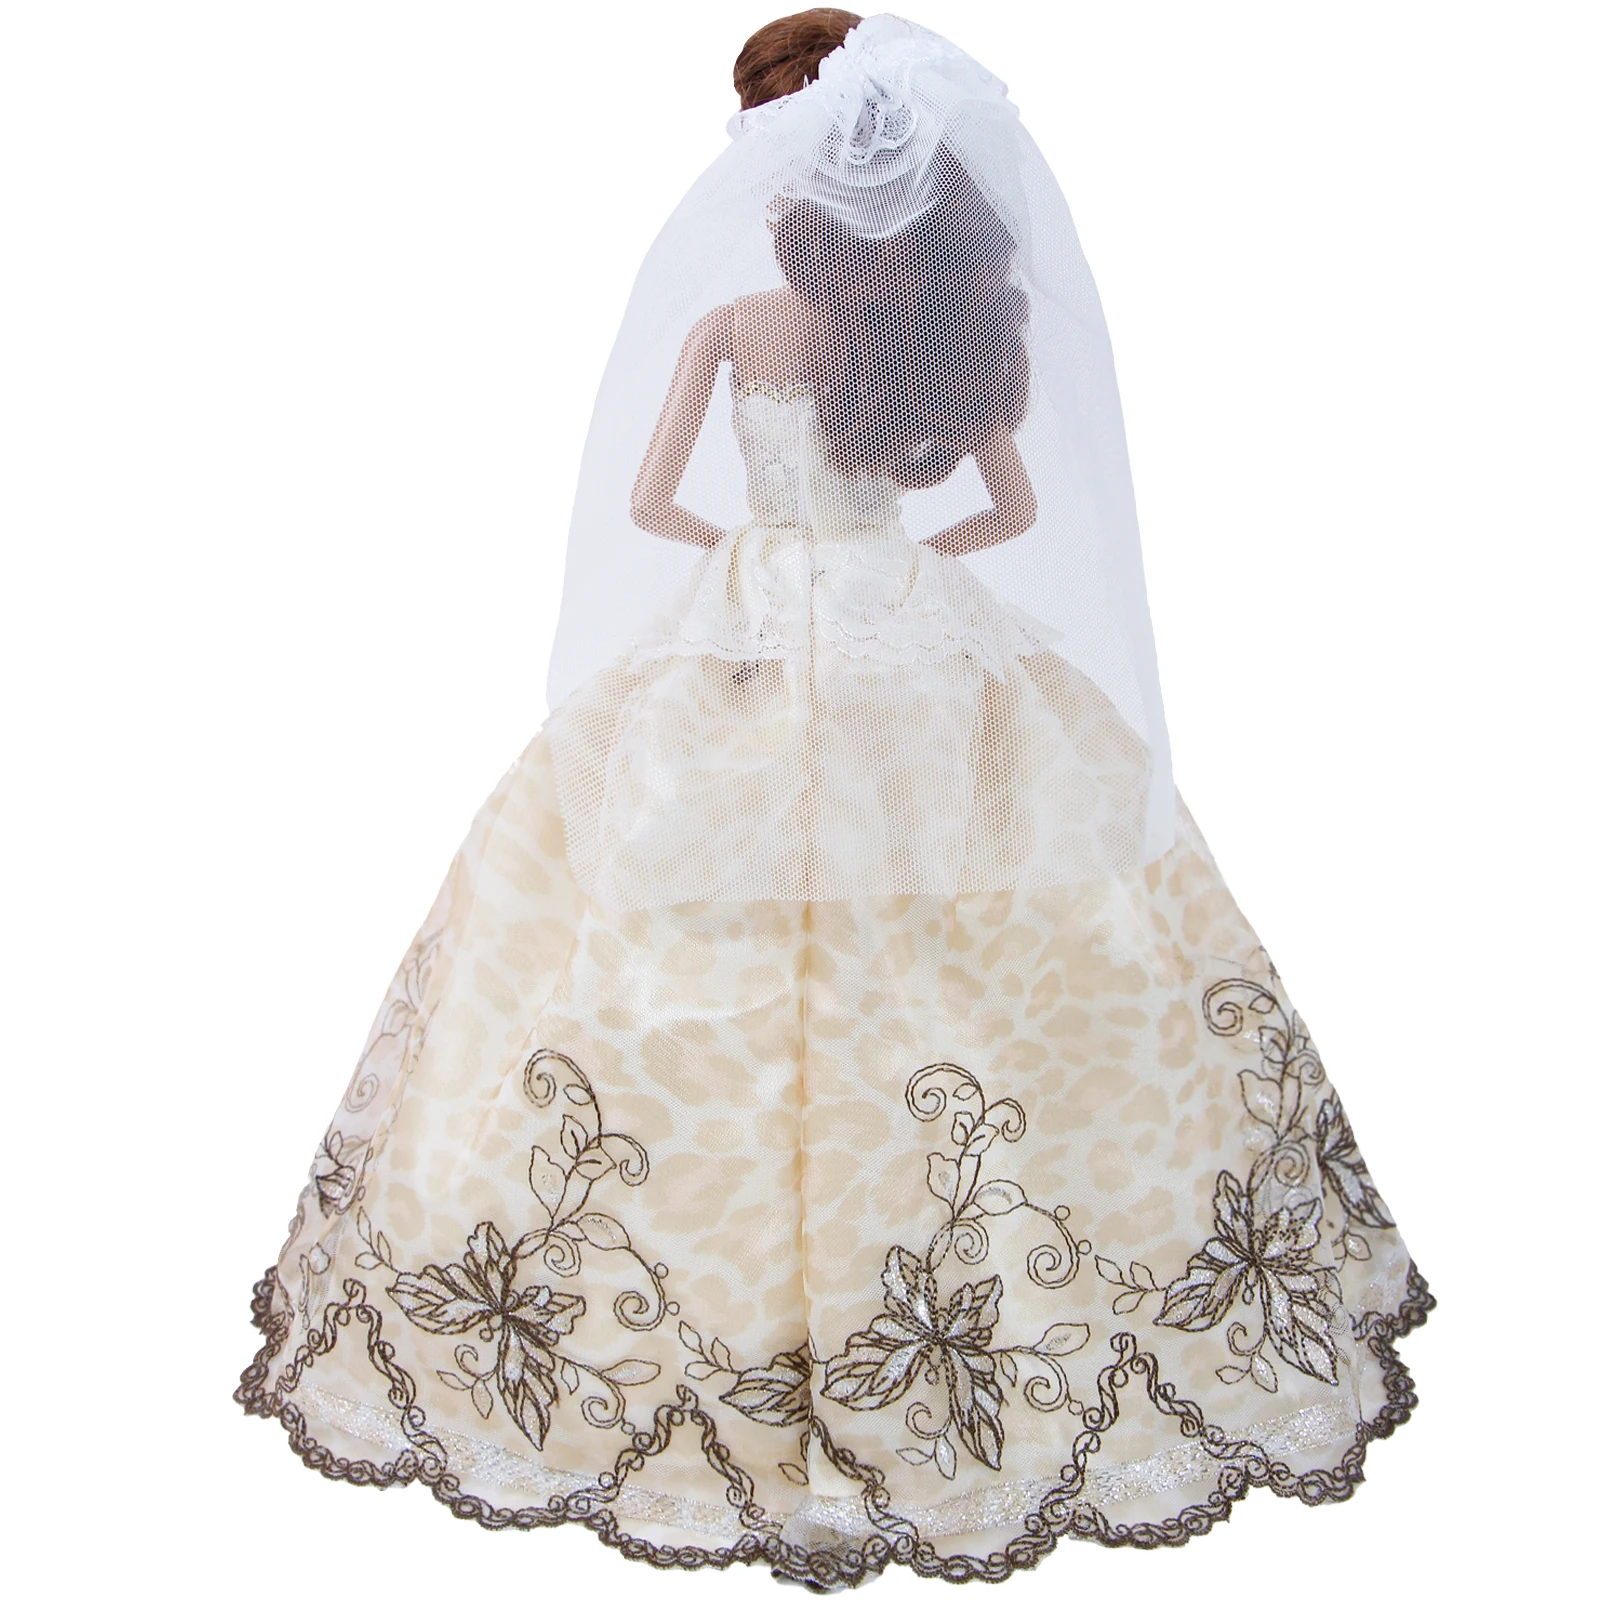 Ручной работы для свадьбы Кружевное белое платье бальное платье+ юбка из фатина, вечернее платье для принцессы, одежда кукольный домик аксессуары для Барби Кукла, детская игрушка